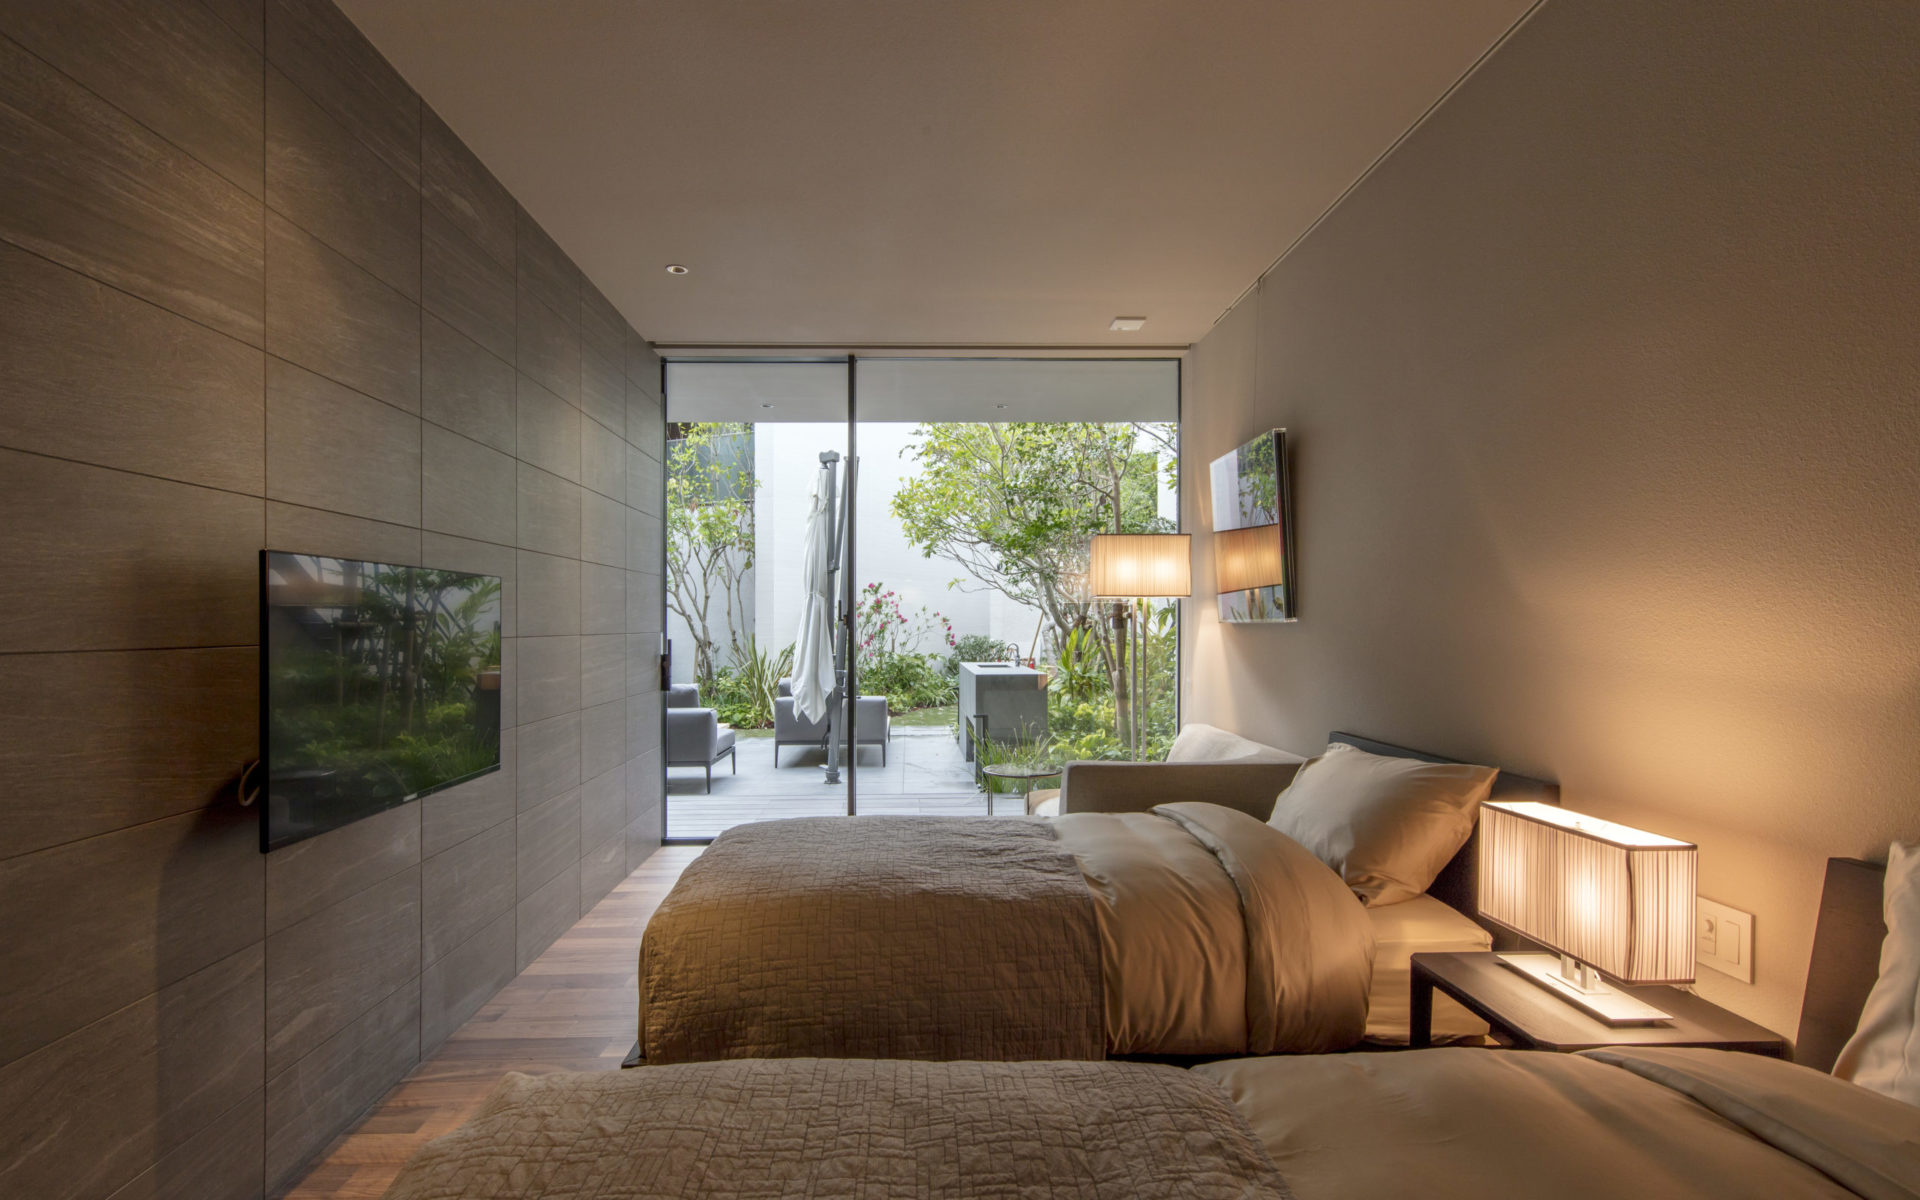 シモンズのベッドマットを利用した落ち着いた雰囲気のベッドルーム 窓からはリゾート風の中庭が見える。